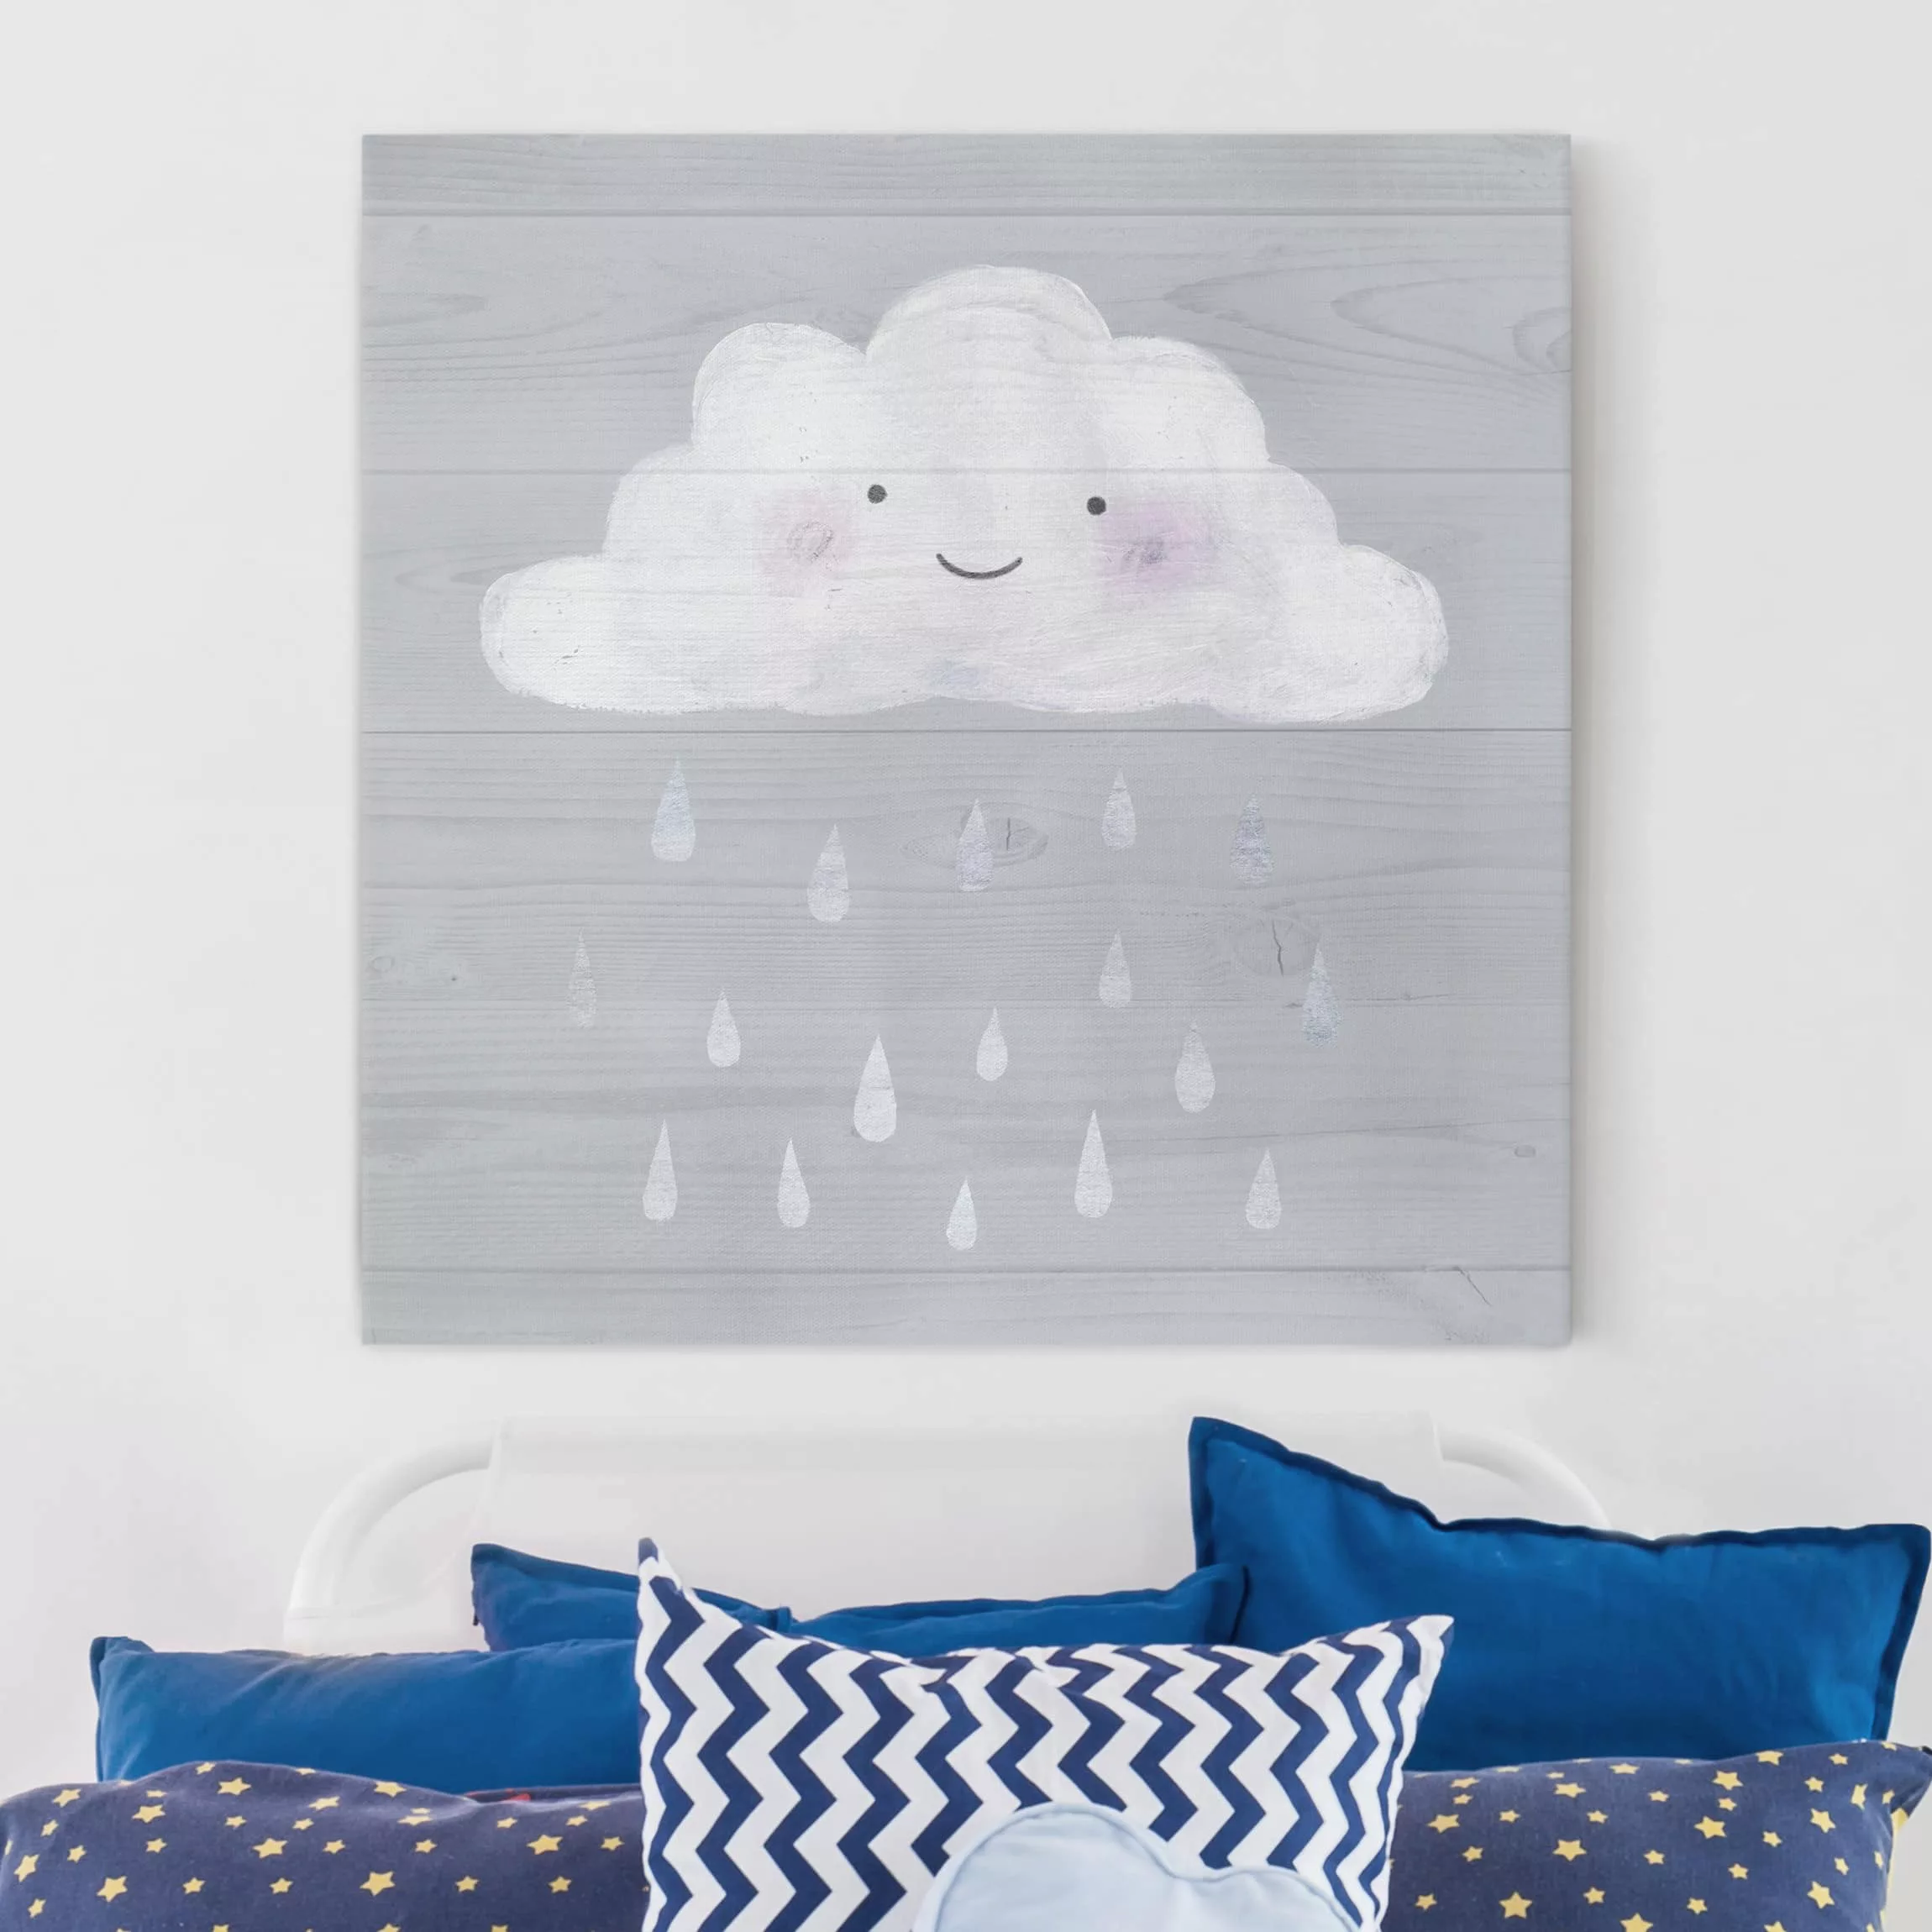 Leinwandbild Kinderzimmer - Quadrat Wolke mit silbernen Regentropfen günstig online kaufen